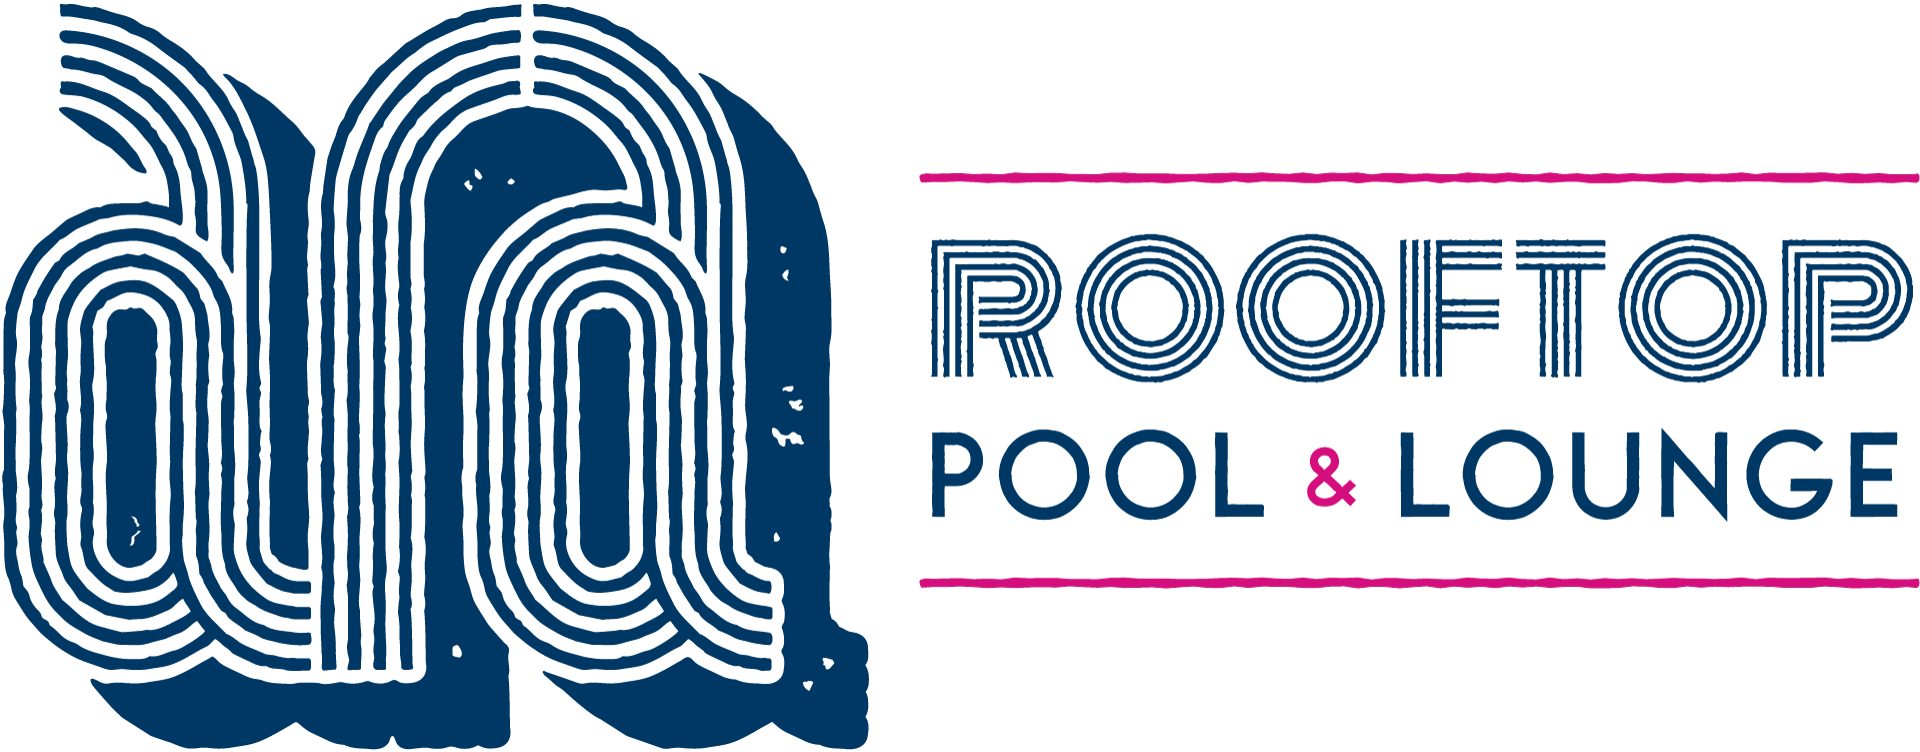 Ara Rooftop Pool & Lounge Logo